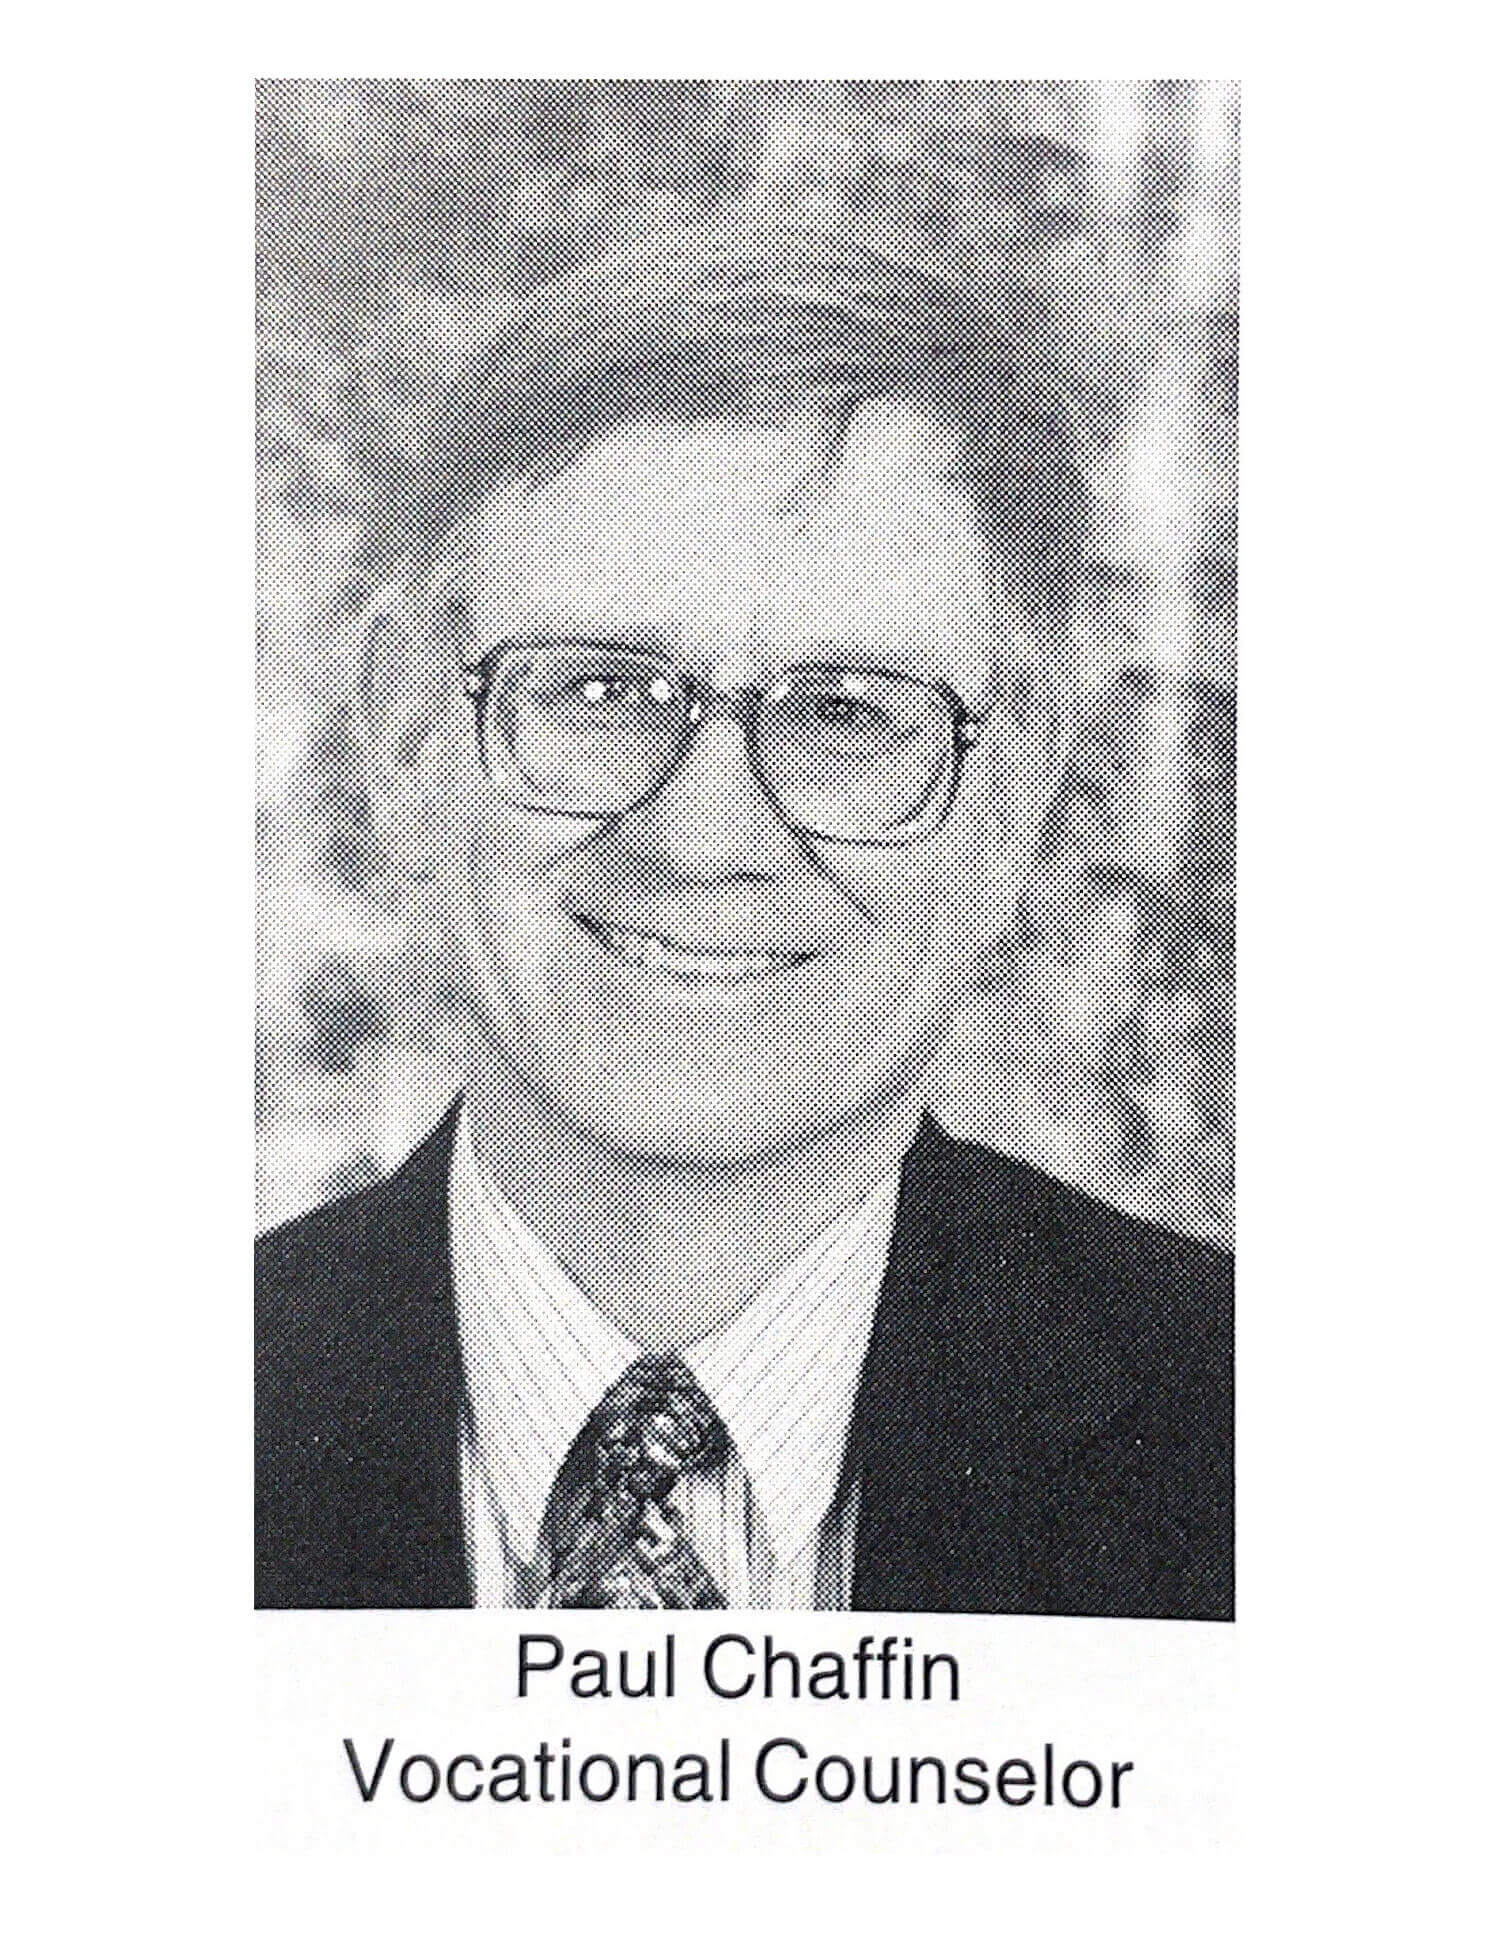 Paul Chaffin